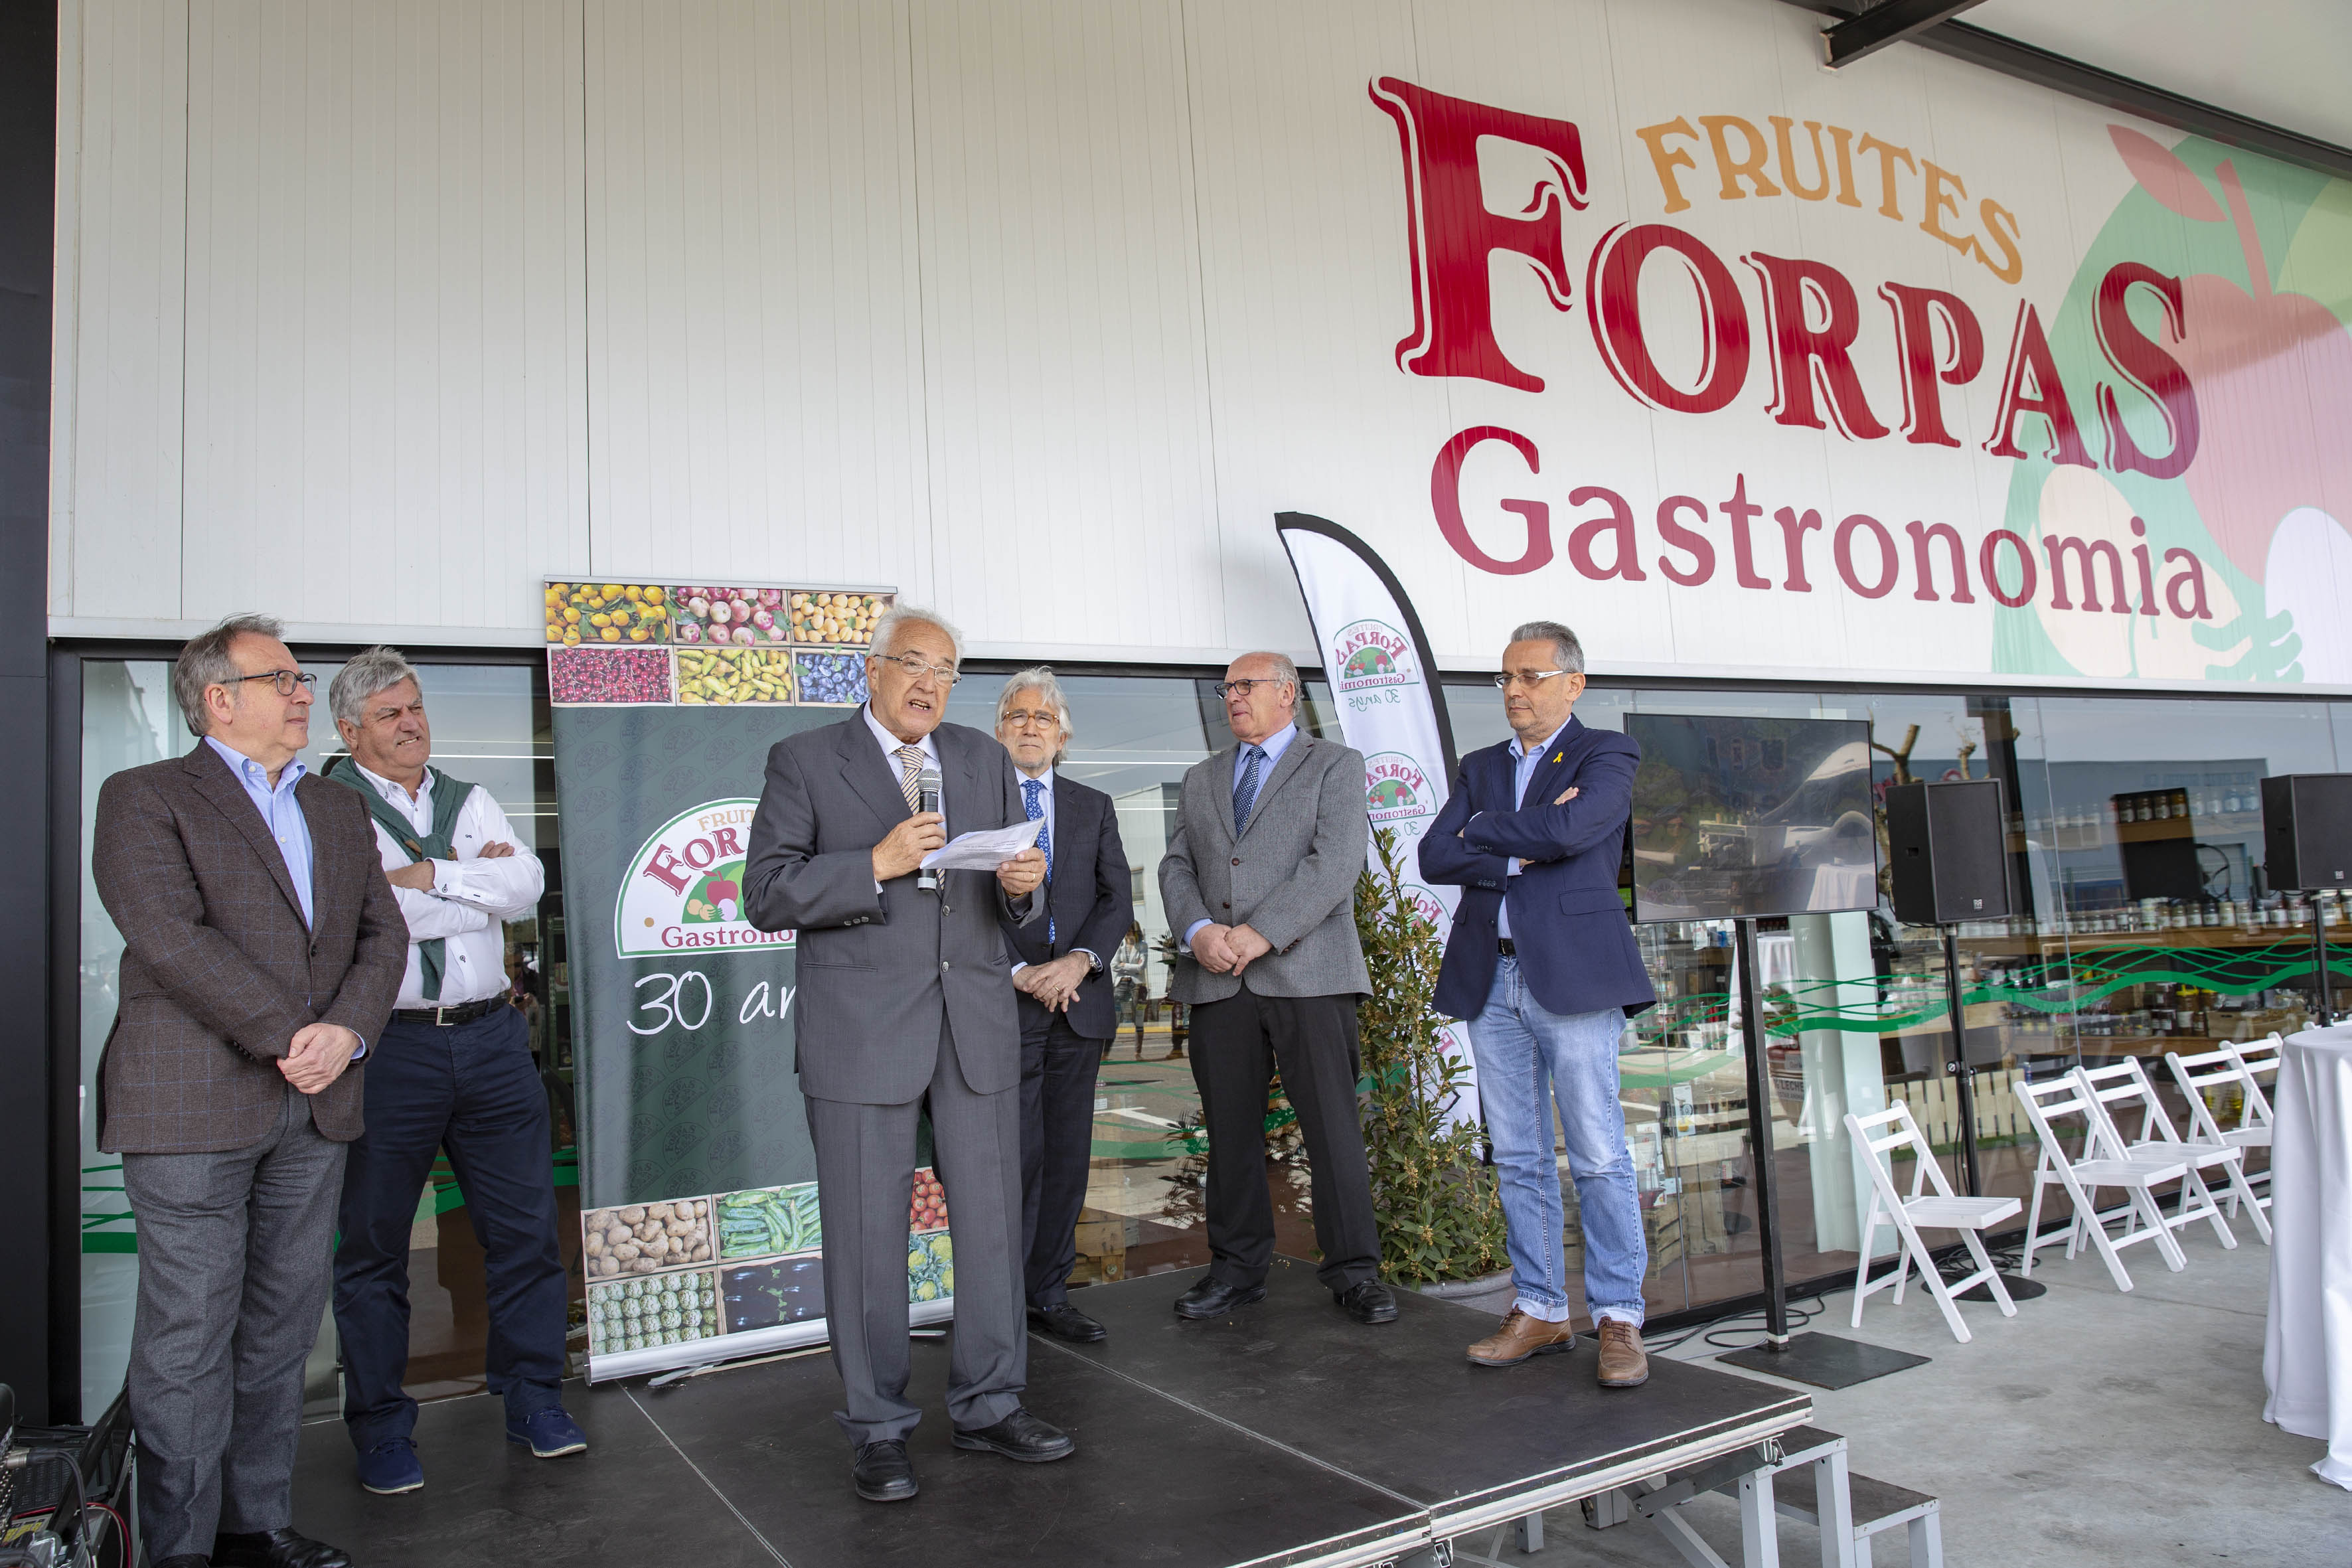 FORPAS Gastronomia celebra 30 anys